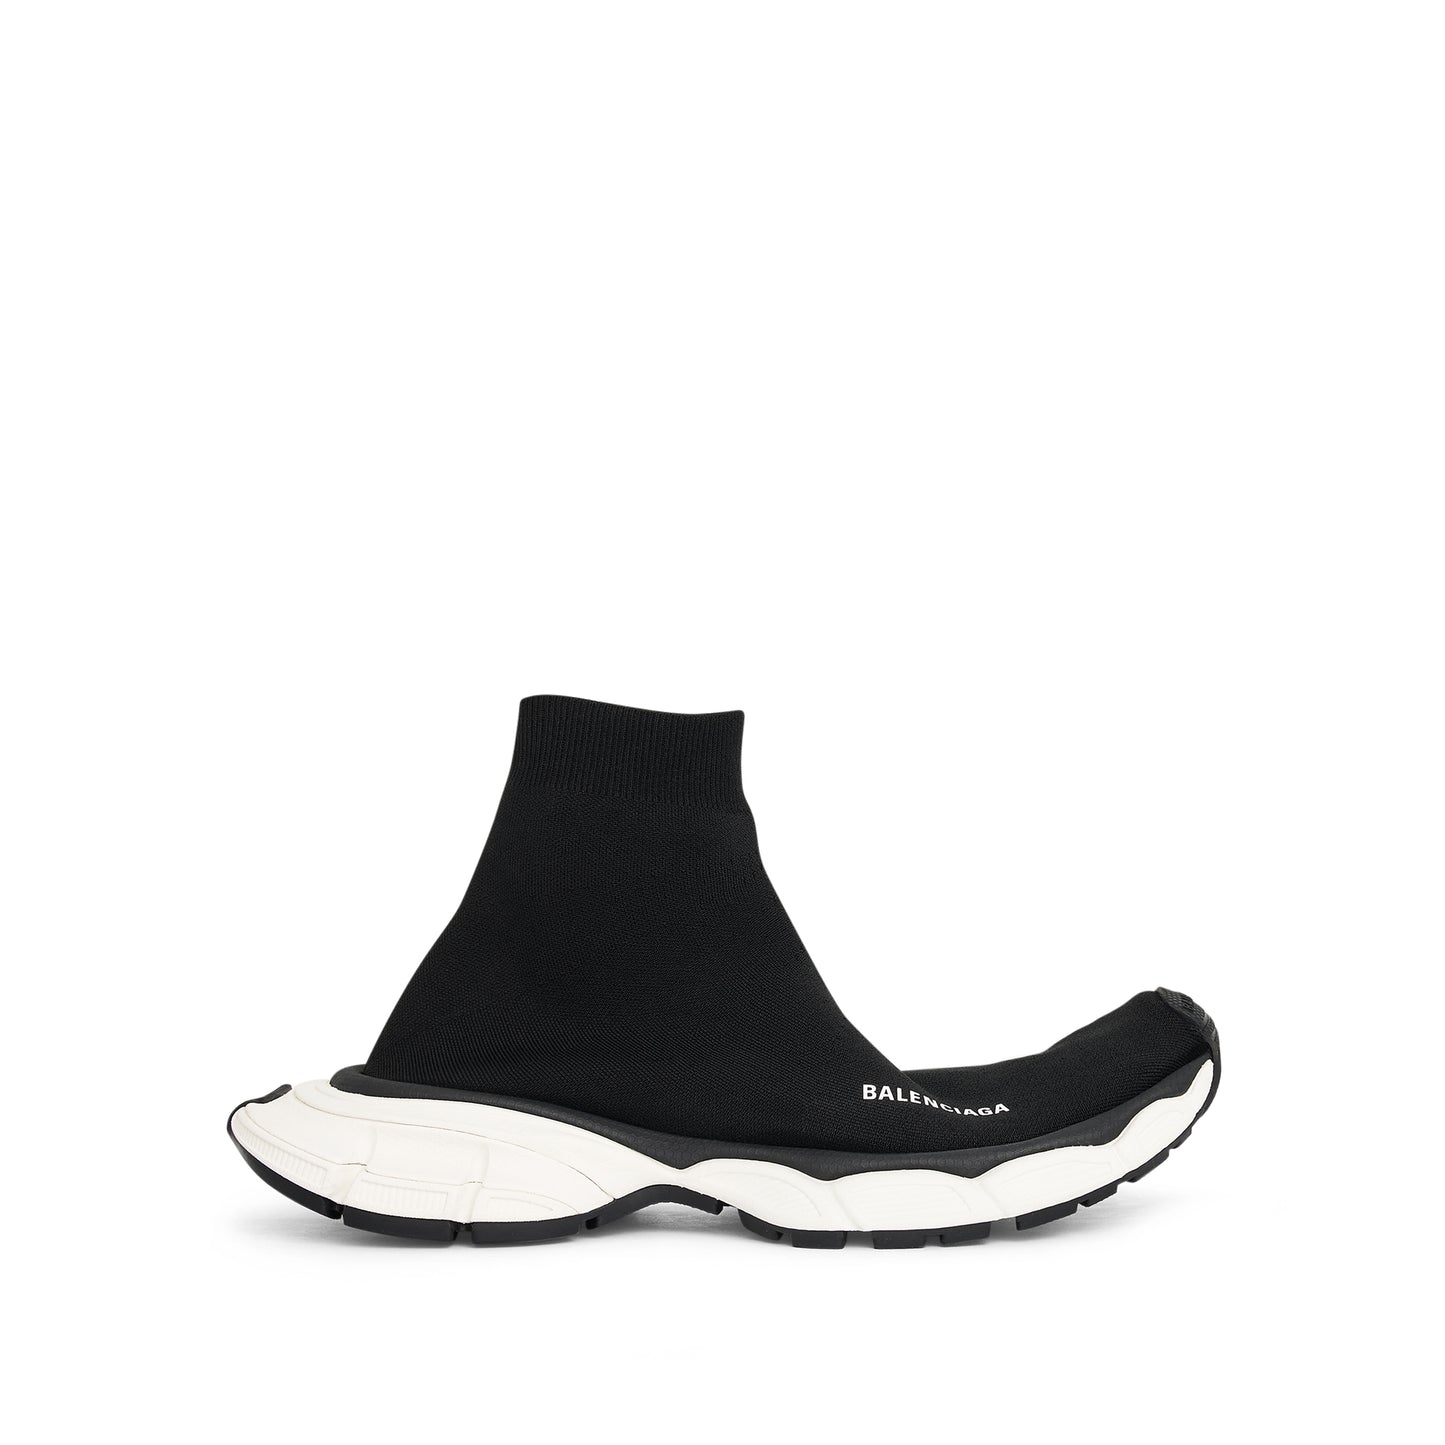 3XL Sock Sneaker in Black/White